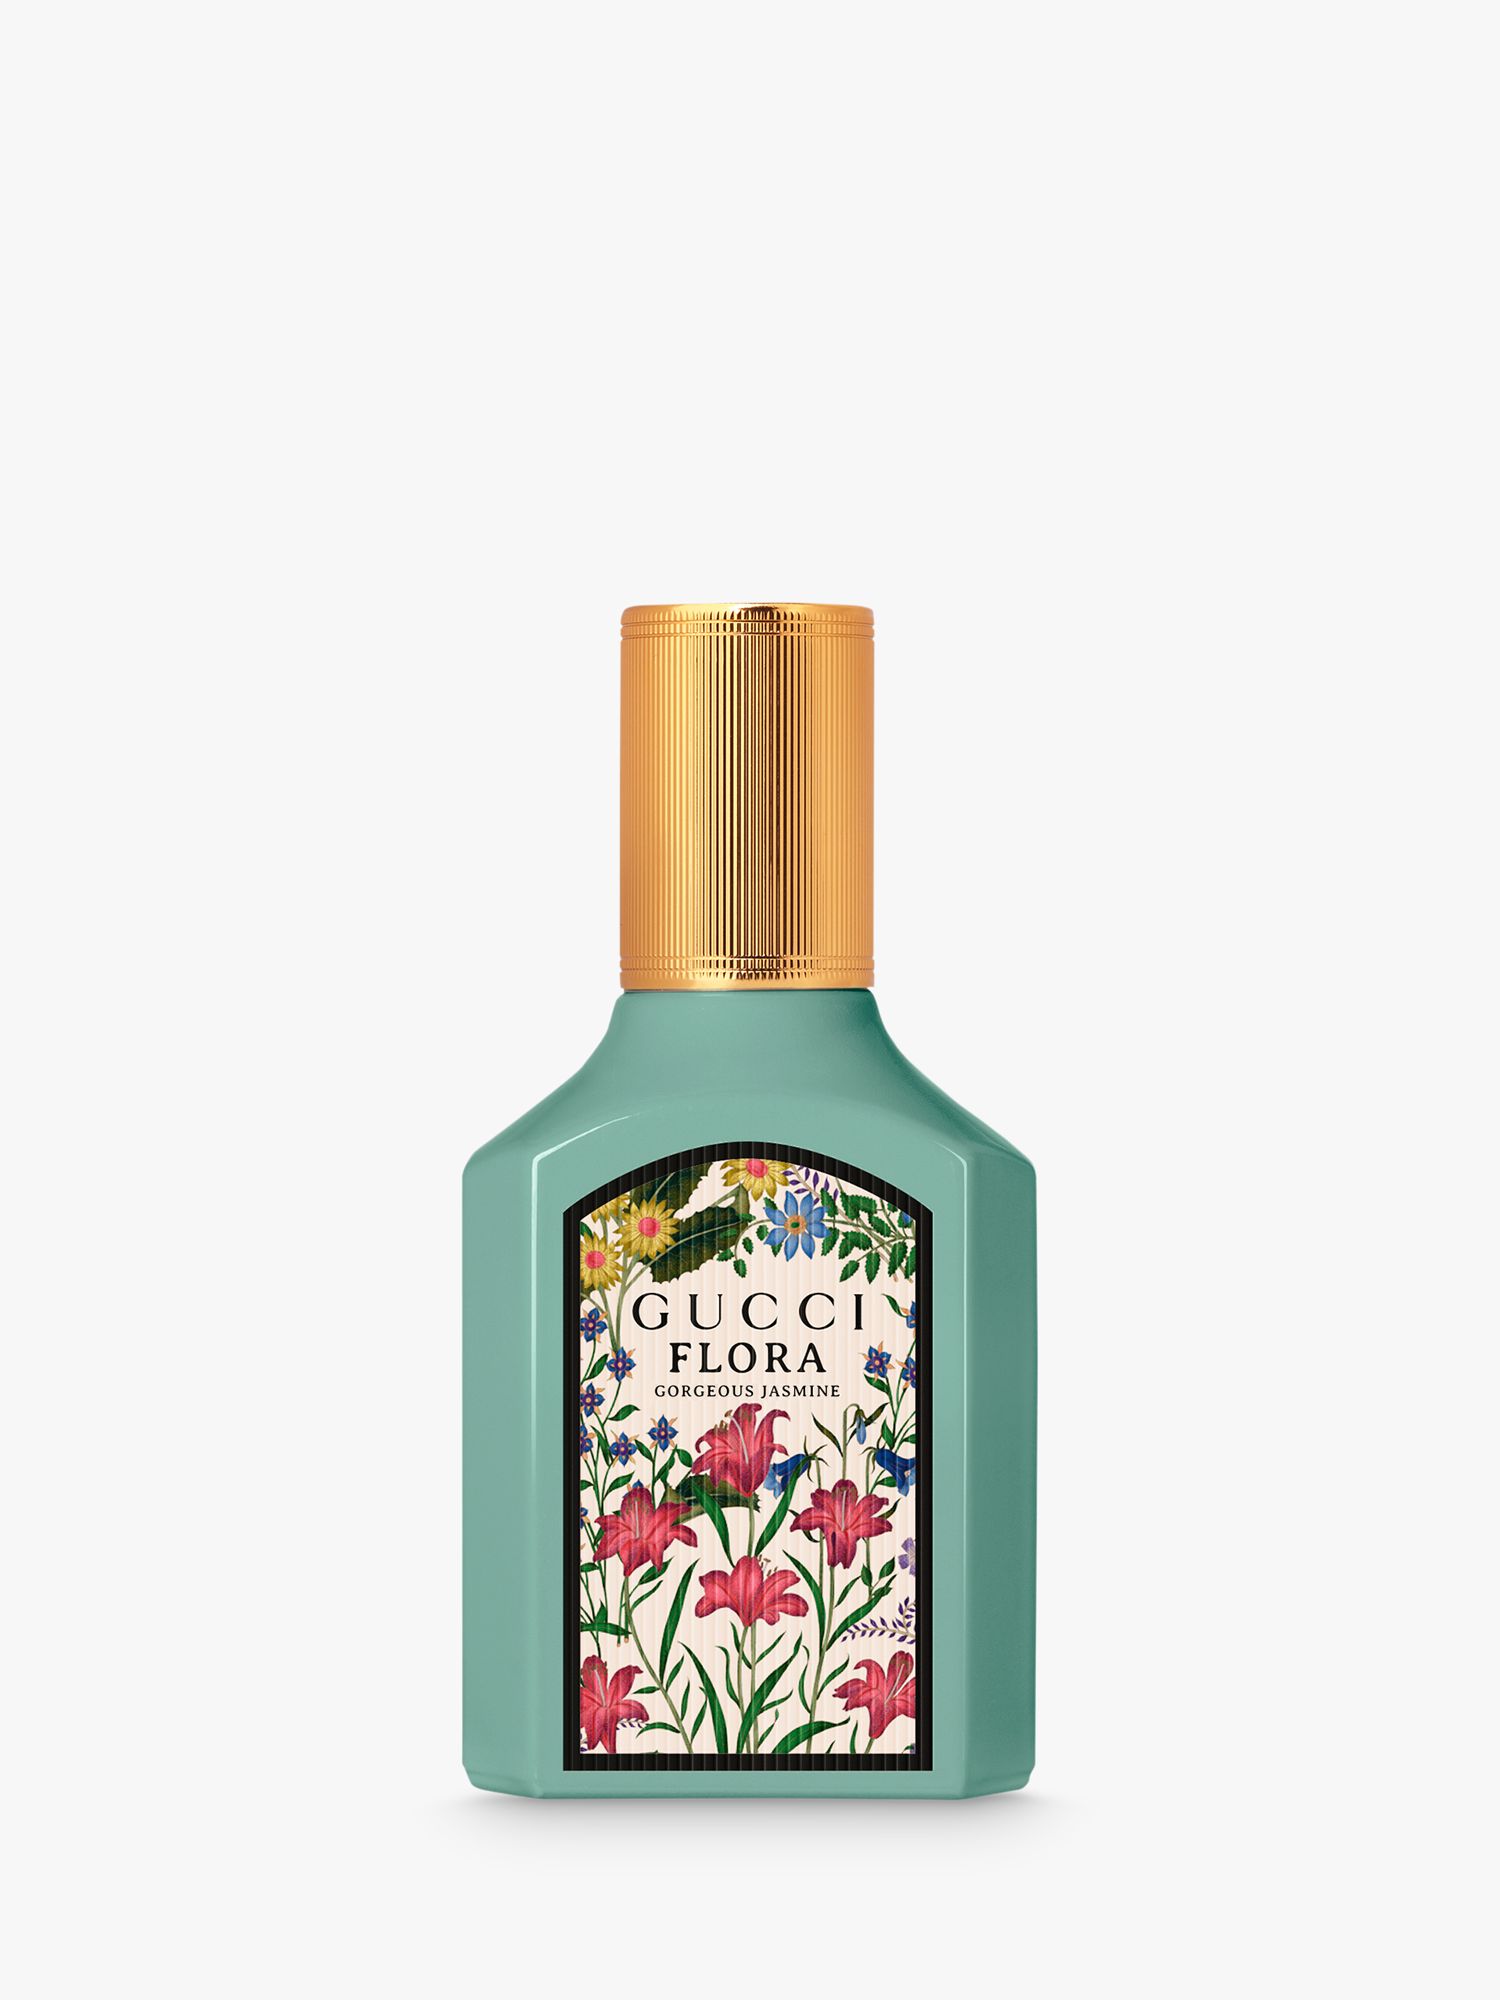 Gucci Flora Gorgeous Jasmine For Her Eau de Parfum, 30ml at John Lewis &  Partners